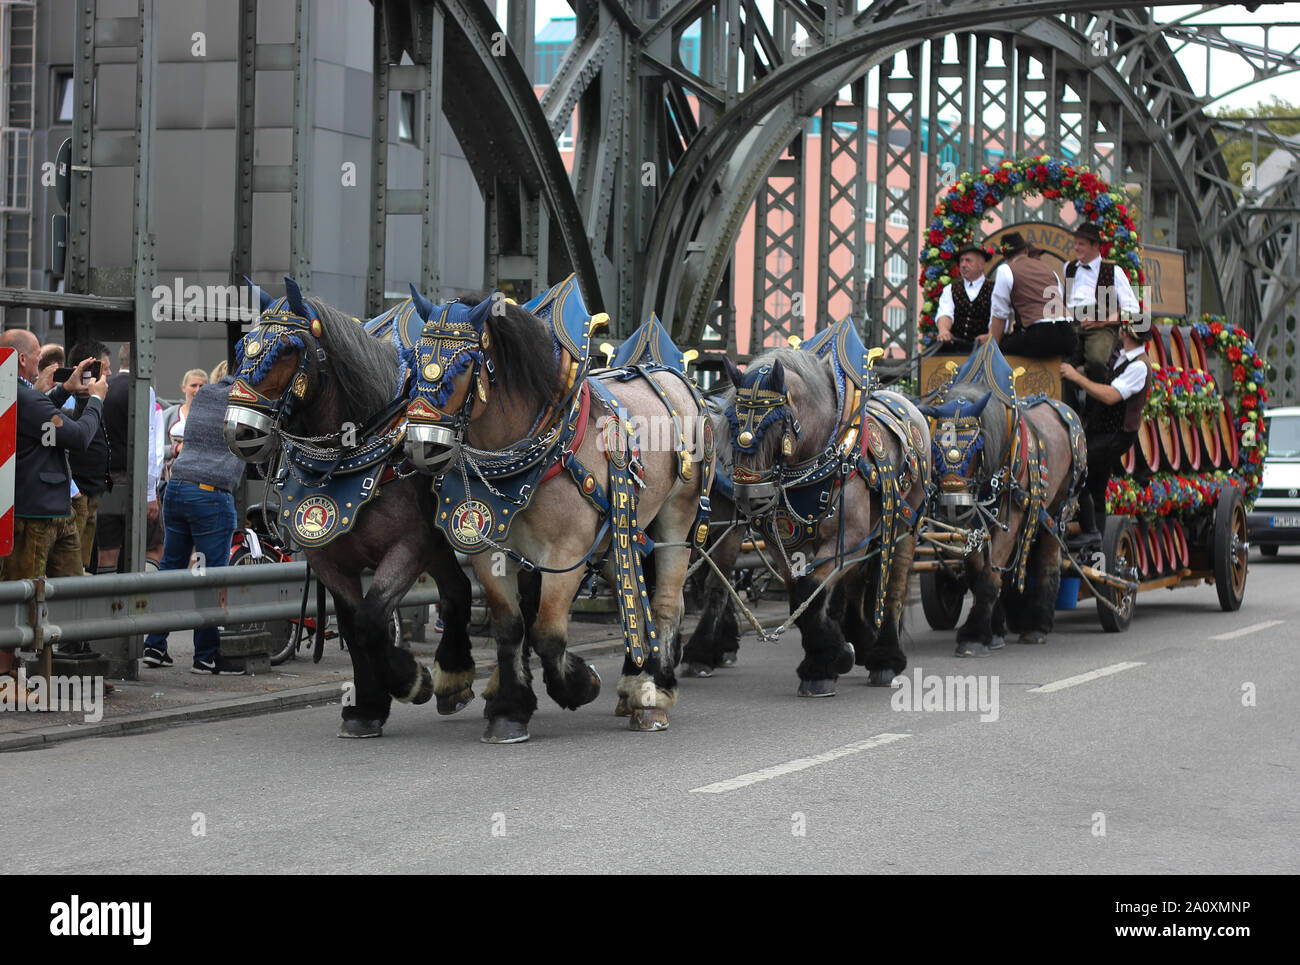 Circulation de chevaux et de charrettes avec chevaux de Brasserie à sang froid, transport de barils de bière. Sang froid maîtrisé. Banque D'Images